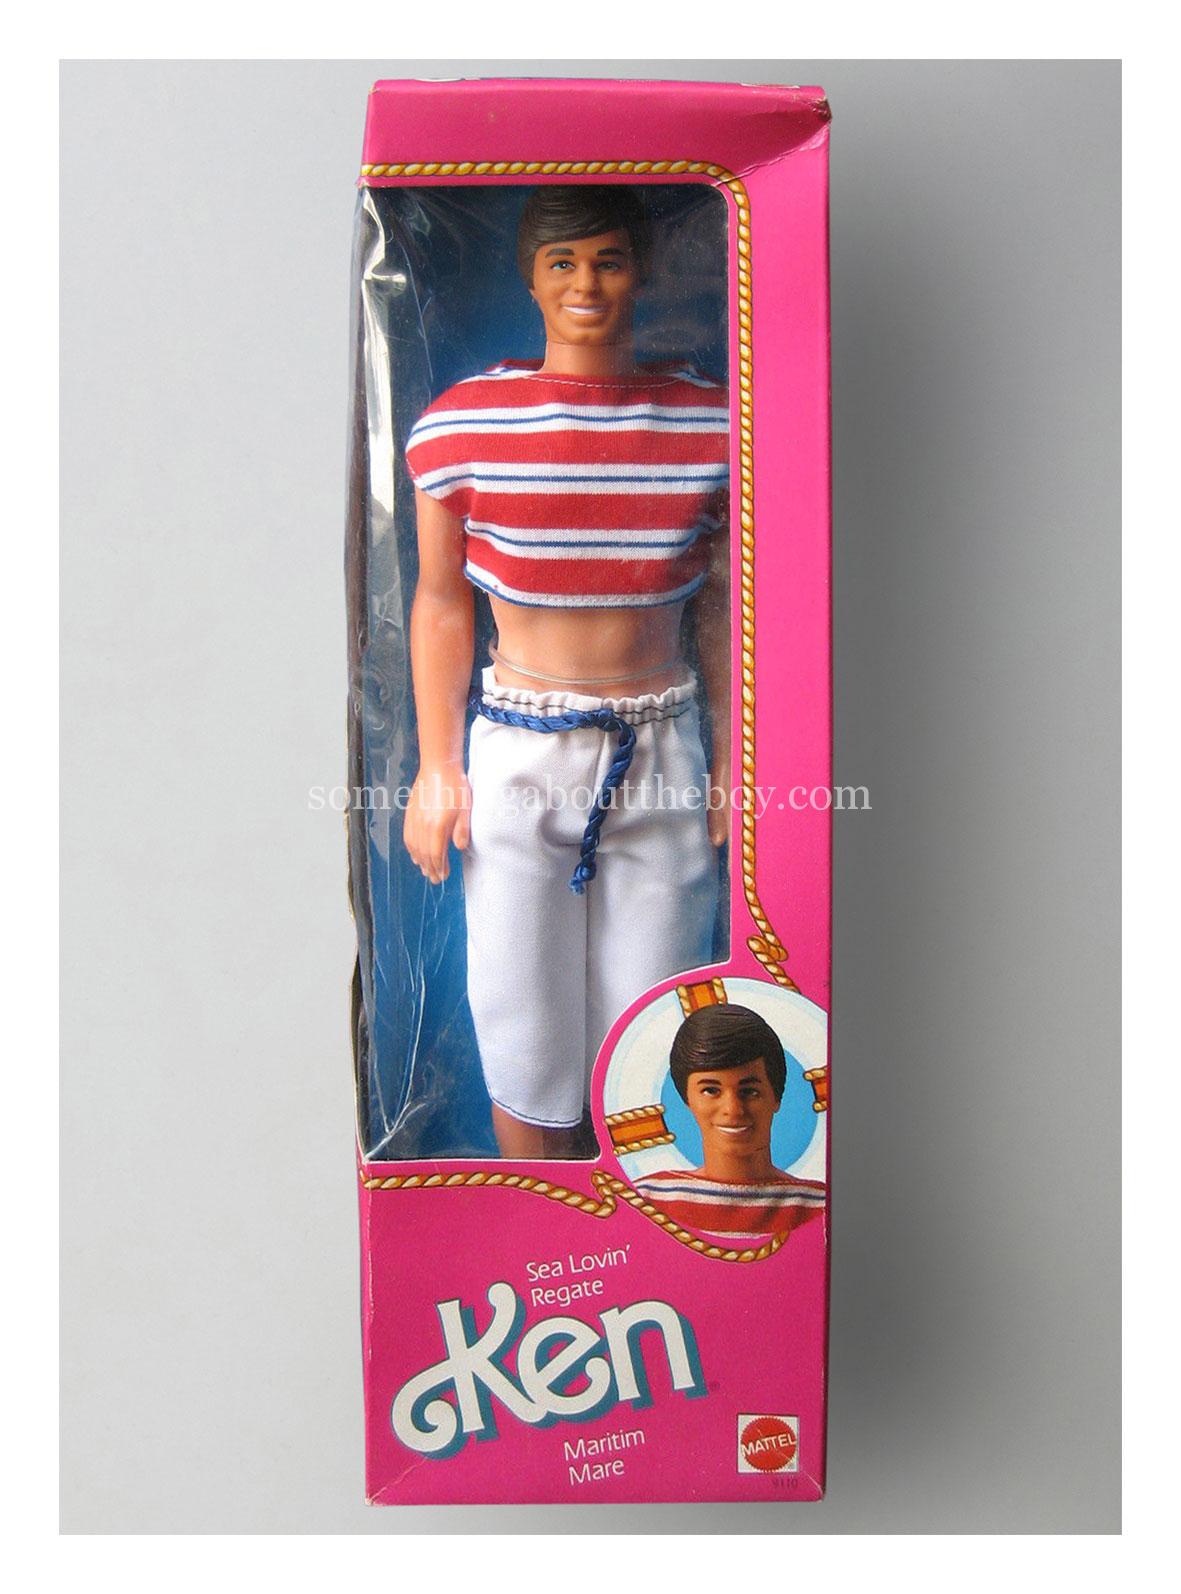 1985 #9110 Sea Lovin' Ken in original packaging